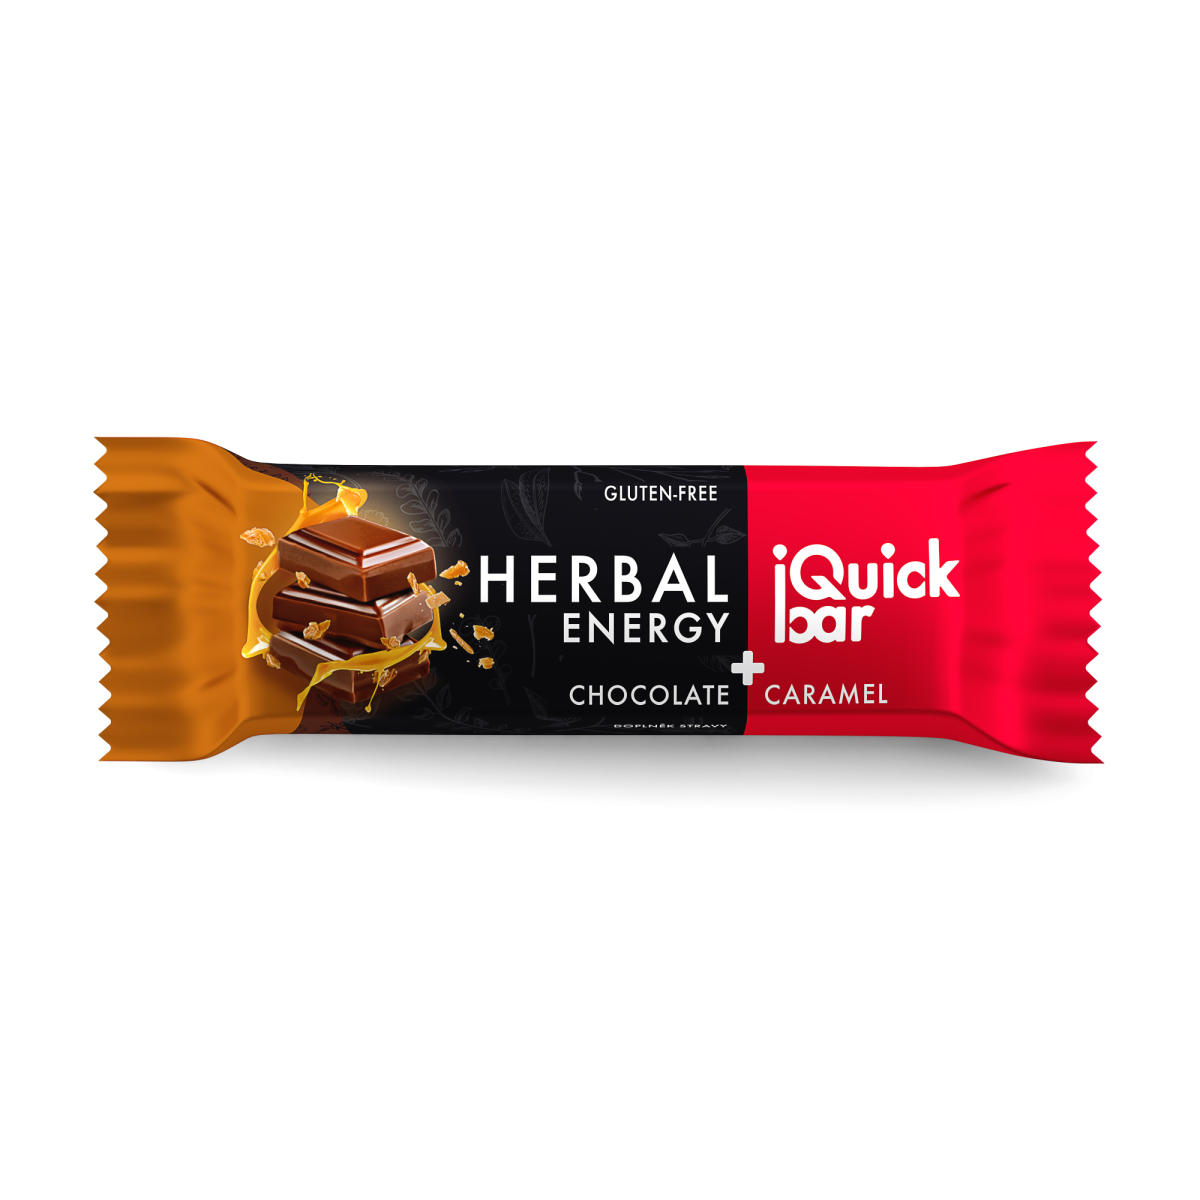 iQuick bar Chocolate + Caramel